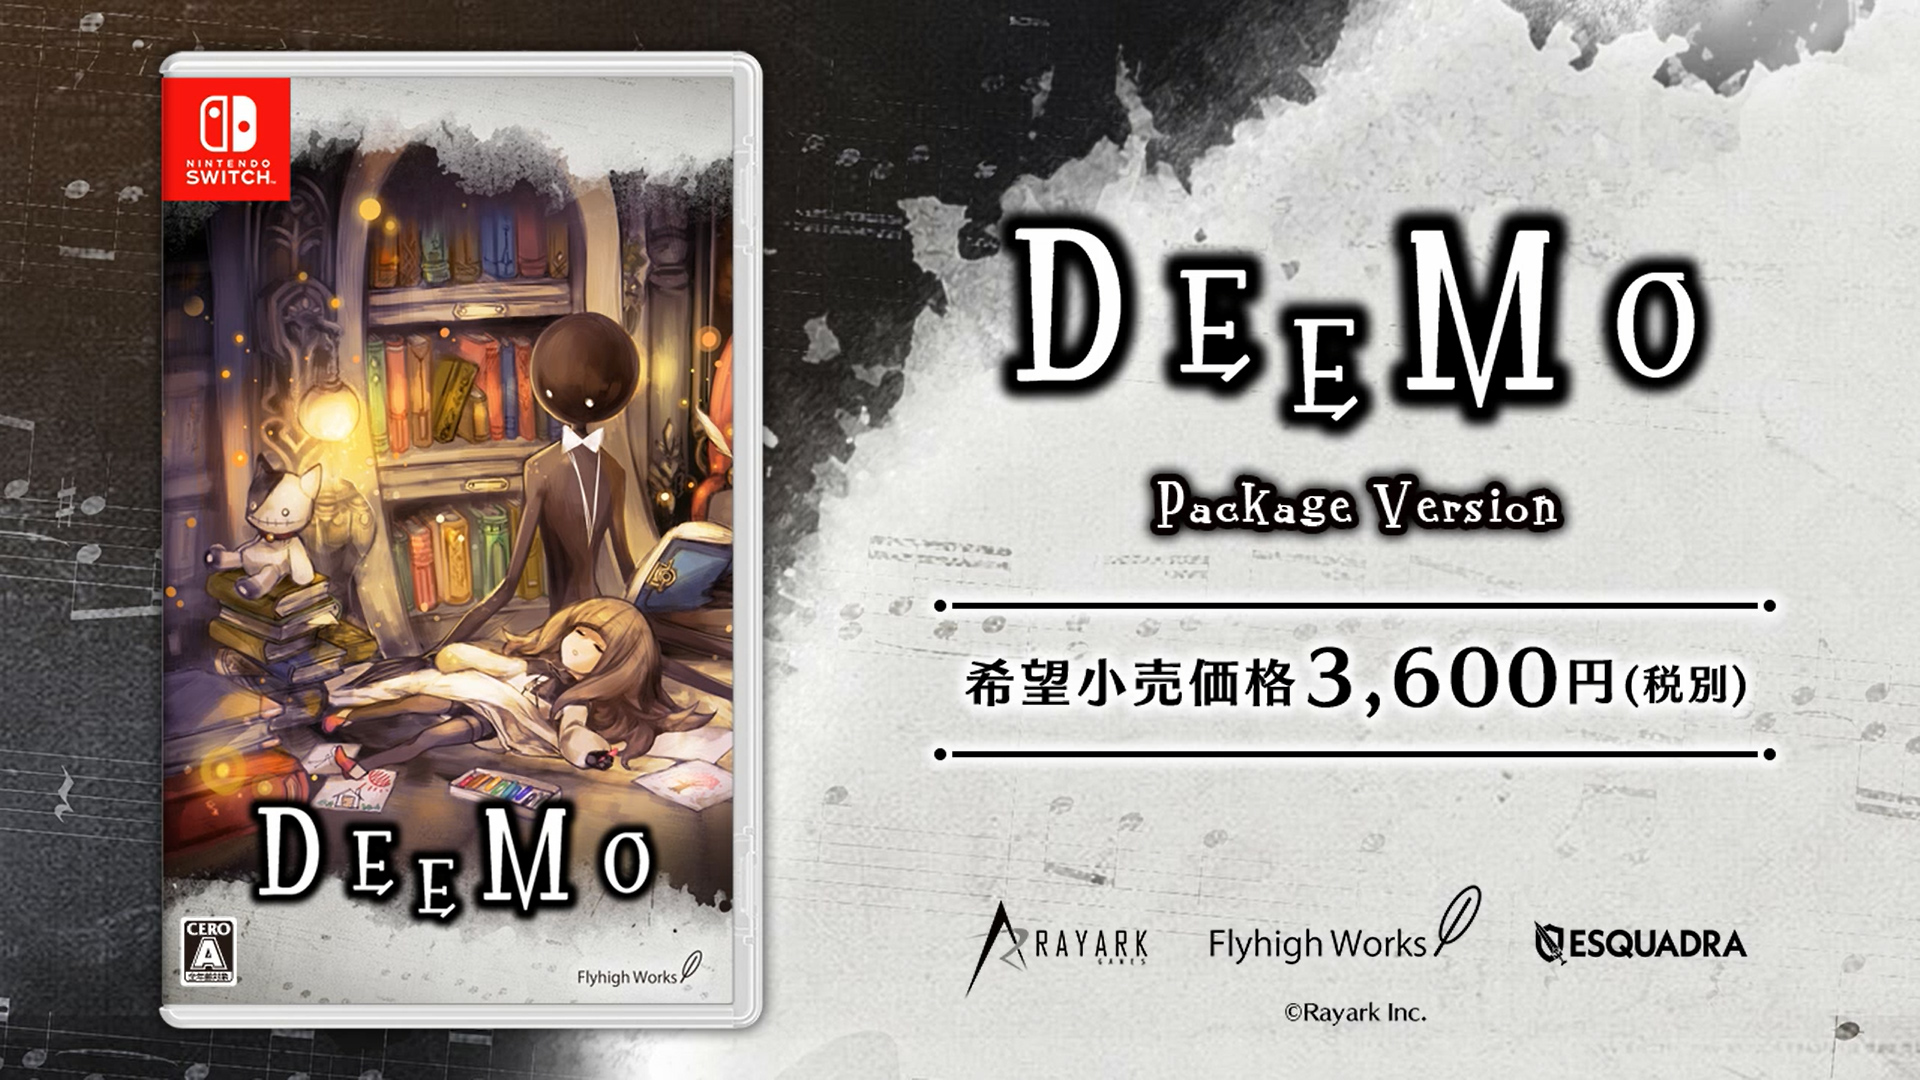 以鋼琴為原型的奇幻節奏遊戲 Deemo 將於10 月25 日發行nintendo Switch 實體版 Deemo 巴哈姆特